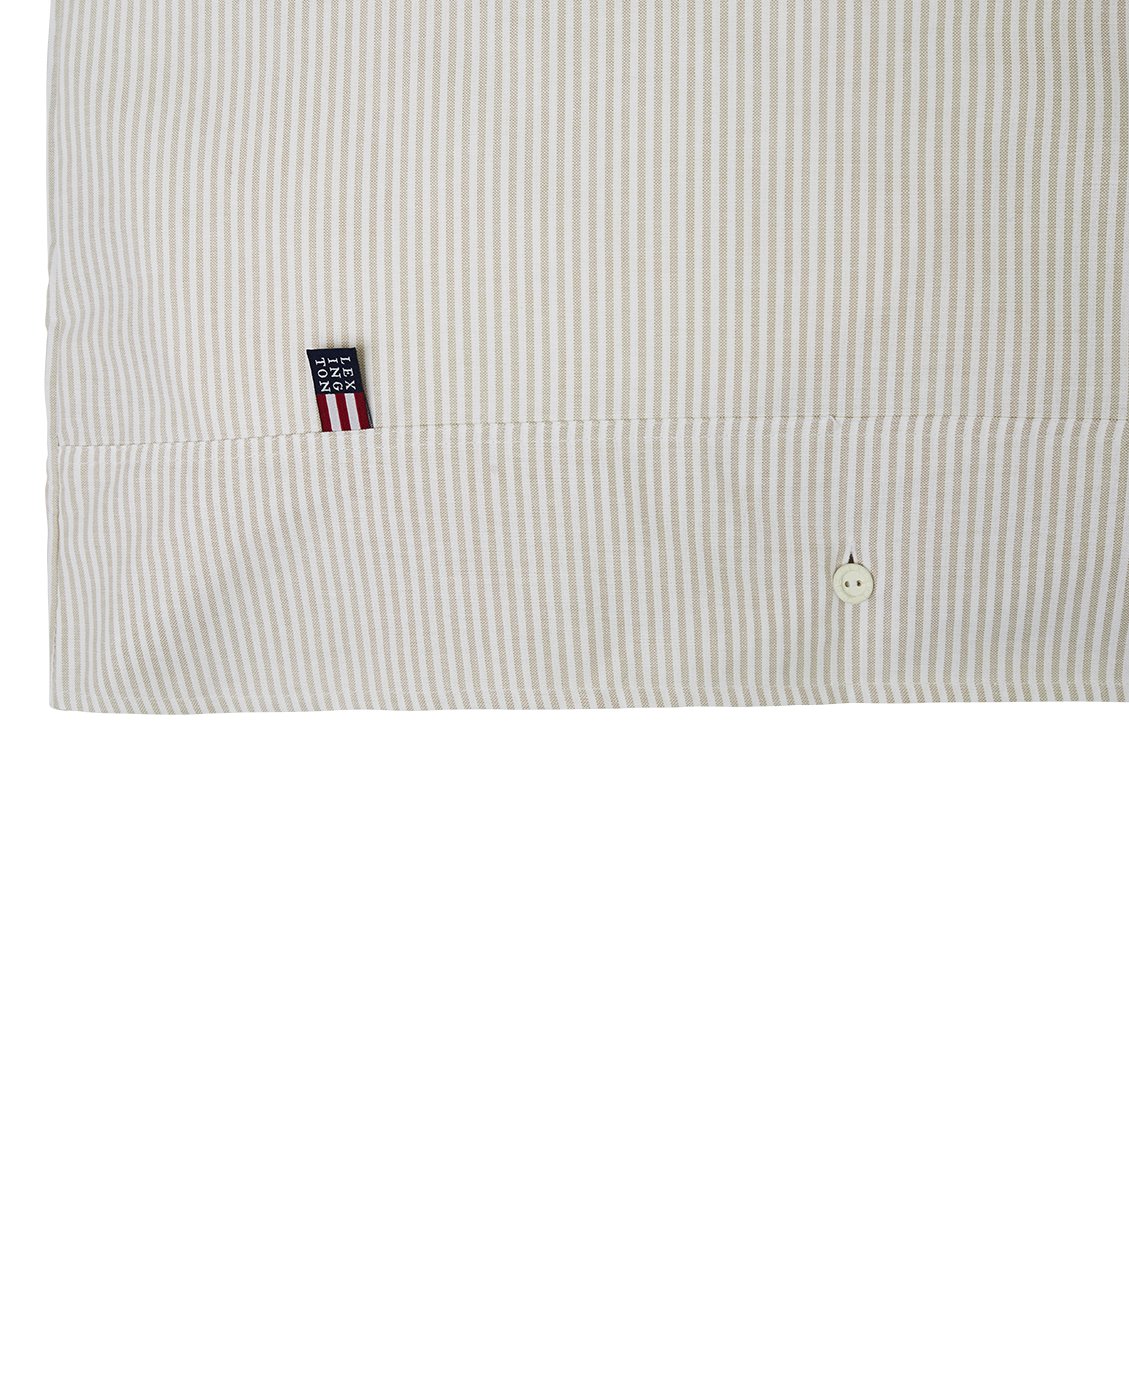 LEXINGTON BETTBEZUG "PIN POINT GRAY/WHITE DUVET" 155x220 